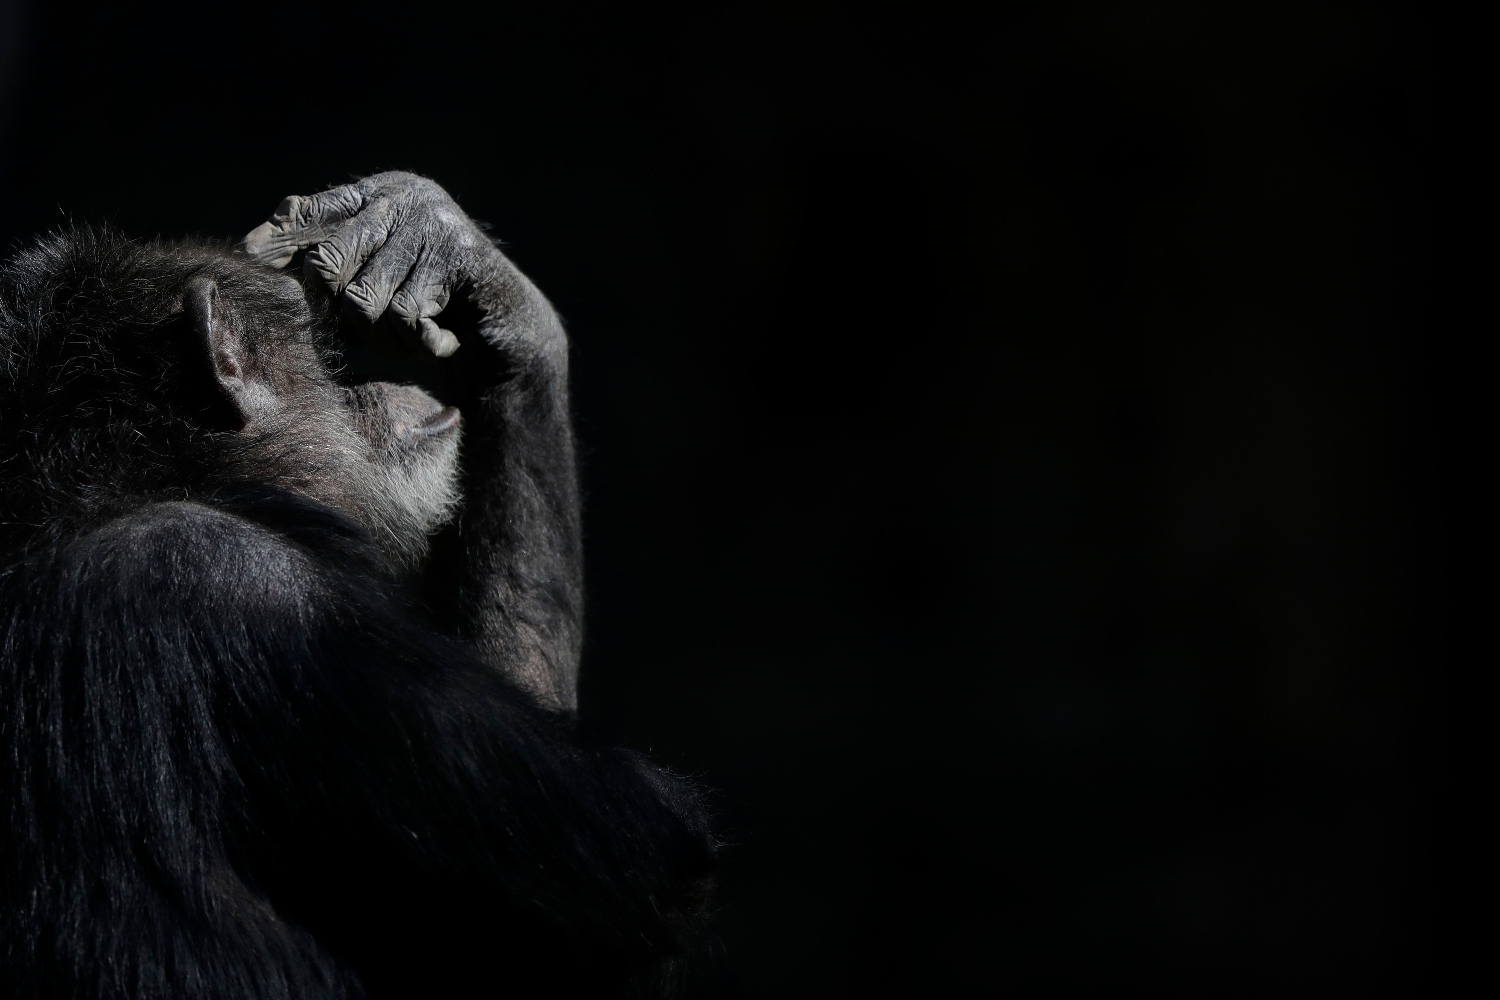 Αττικό Ζωολογικό Πάρκο: Σκότωσαν χιμπατζή που διέφυγε από το κλουβί του – Σφοδρές αντιδράσεις